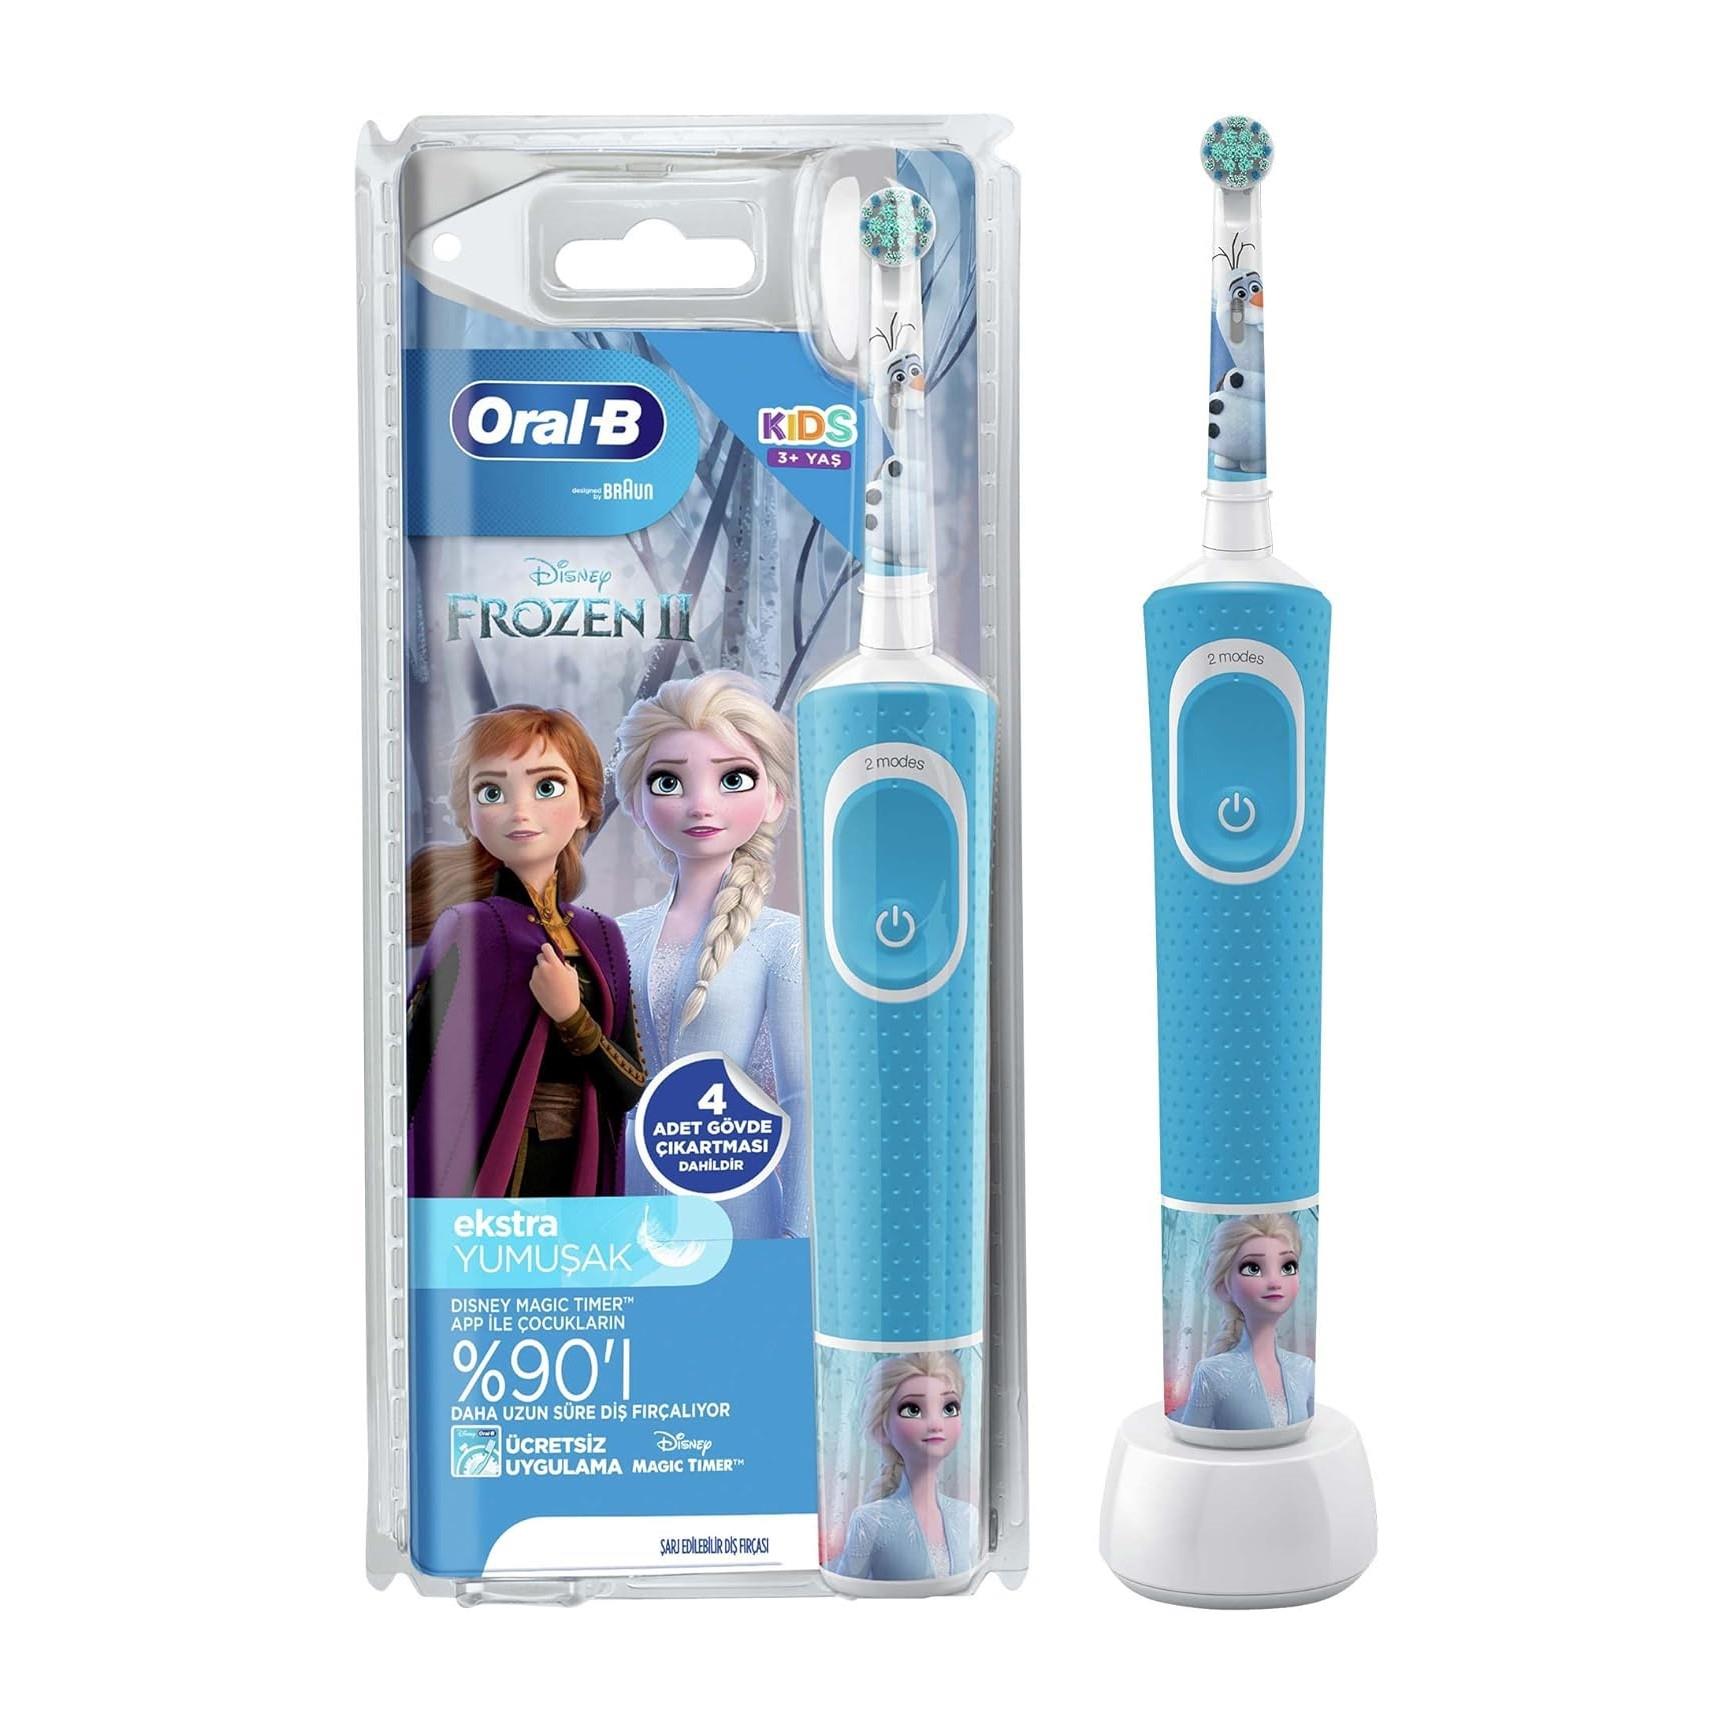 Oral-B Çocuklar İçin Şarj Edilebilir Diş Fırçası D100 Frozen Özel Seri -  Sağlıklı Diş Bakımı için Frozen Temalı Şarj Edilebilir Diş Fırças